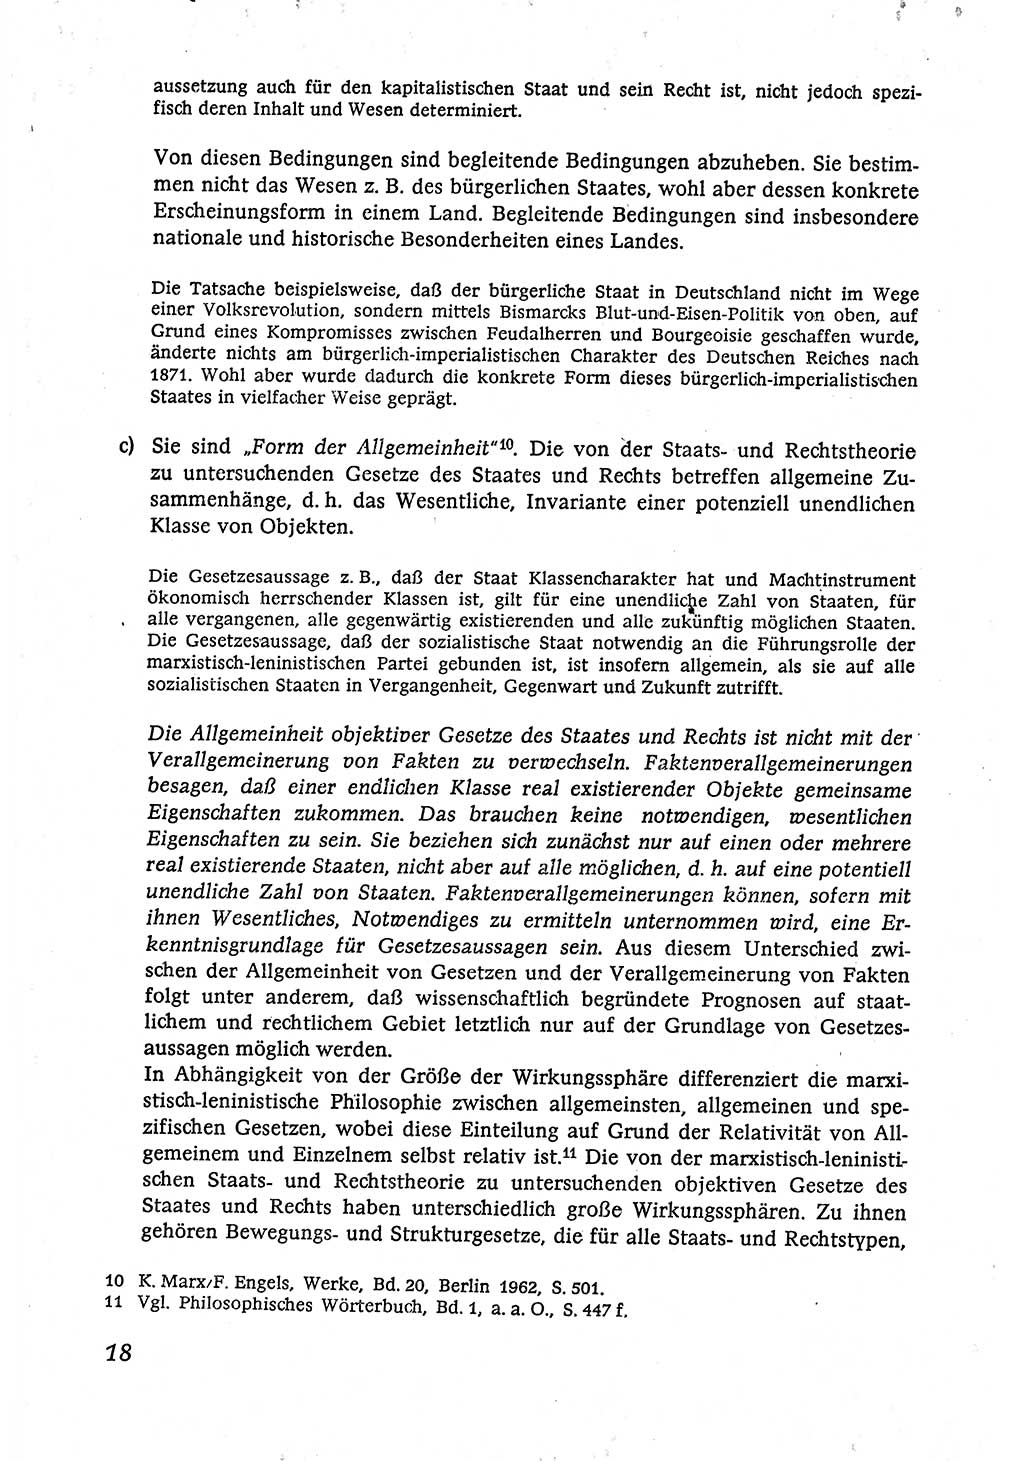 Marxistisch-leninistische (ML) Staats- und Rechtstheorie [Deutsche Demokratische Republik (DDR)], Lehrbuch 1980, Seite 18 (ML St.-R.-Th. DDR Lb. 1980, S. 18)